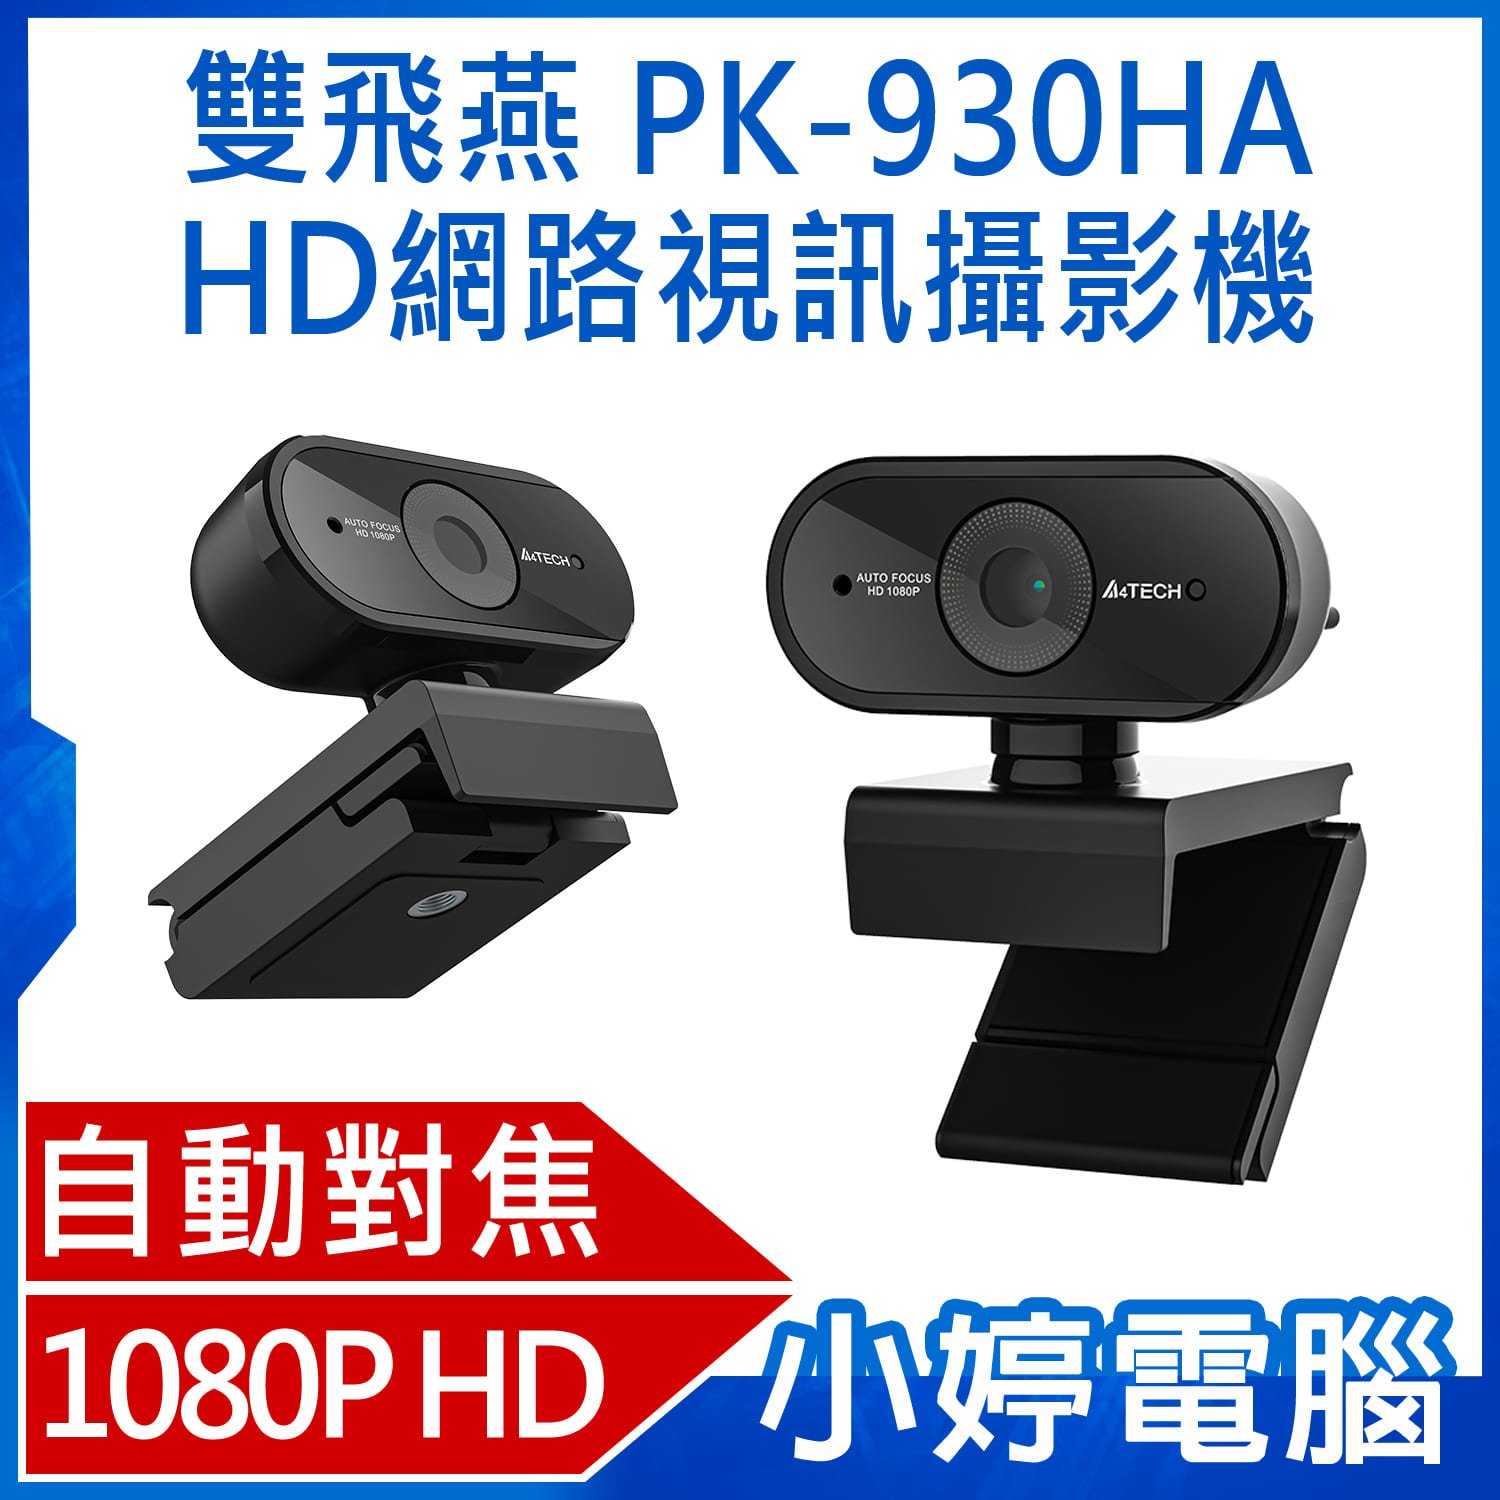 【小婷電腦】A4 TECH 雙飛燕 PK-930HA 1080P HD高畫質自動對焦網路視訊攝影機